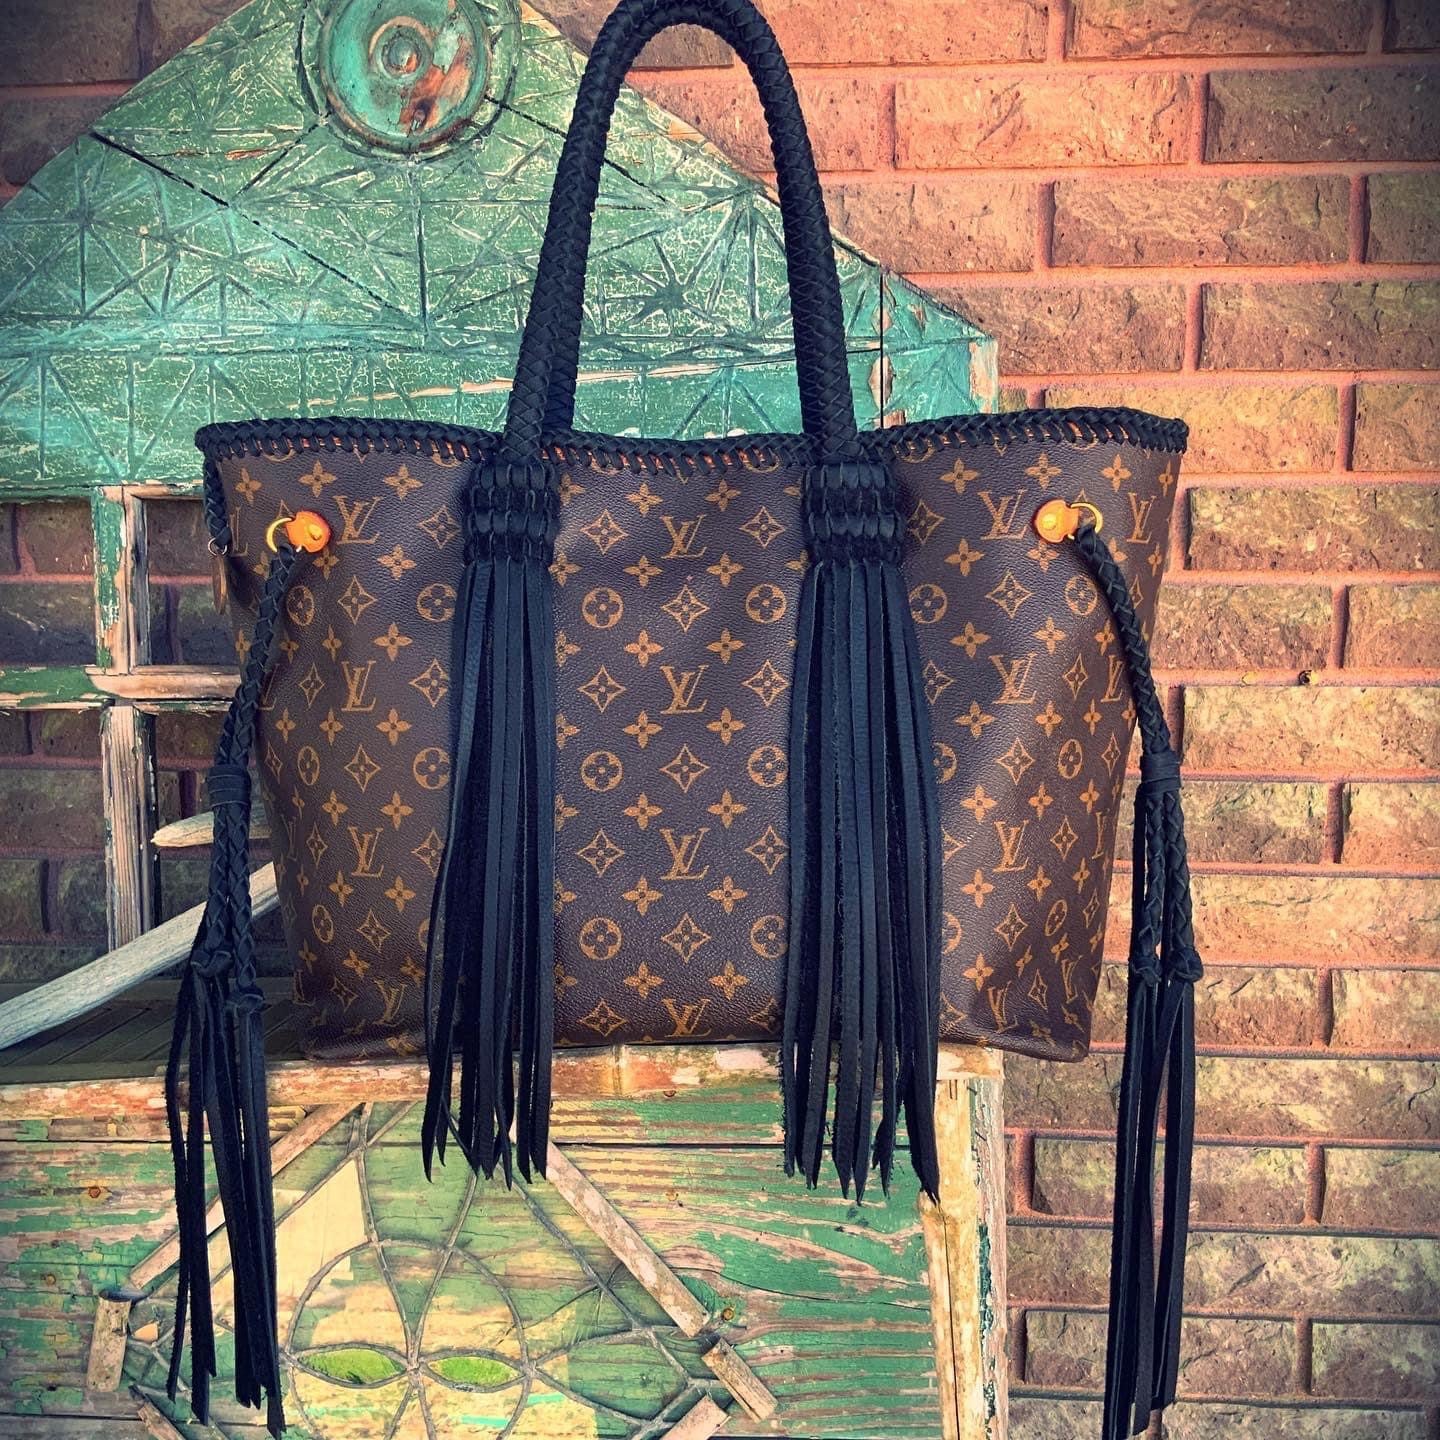 Authentic Louis Vuitton revamped Fringe purse #diwali2020